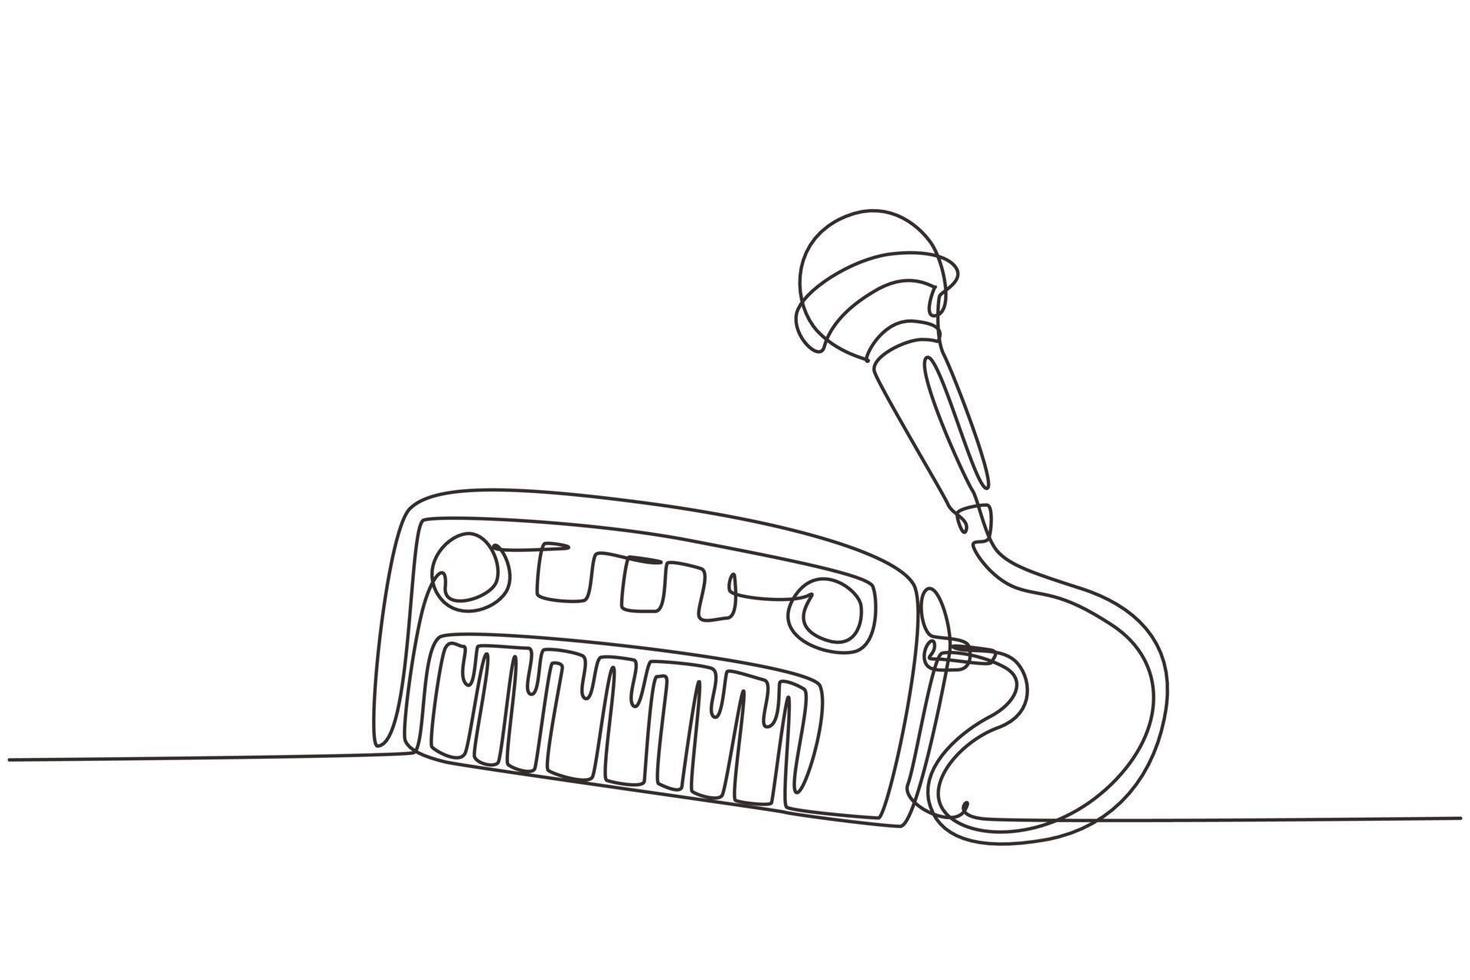 piano de brinquedo elétrico de desenho contínuo de uma linha e microfone. Brinquedo de instrumento musical de teclado de piano eletrônico para crianças com microfone para meninos e meninas. vetor de design de desenho de linha única